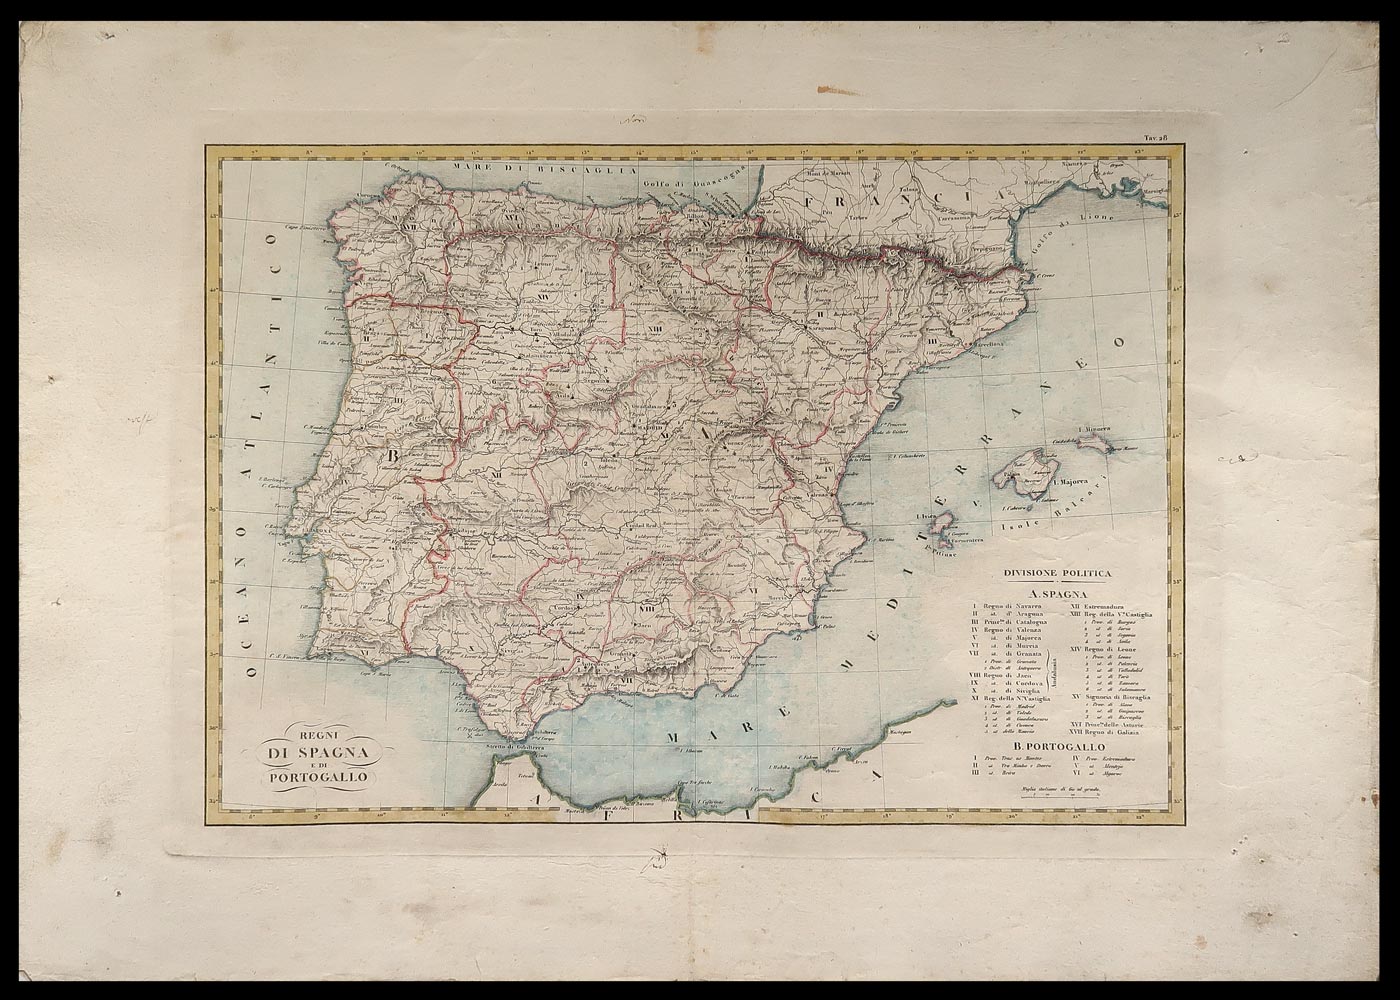 carta geografica regni spagna portogallo marieni